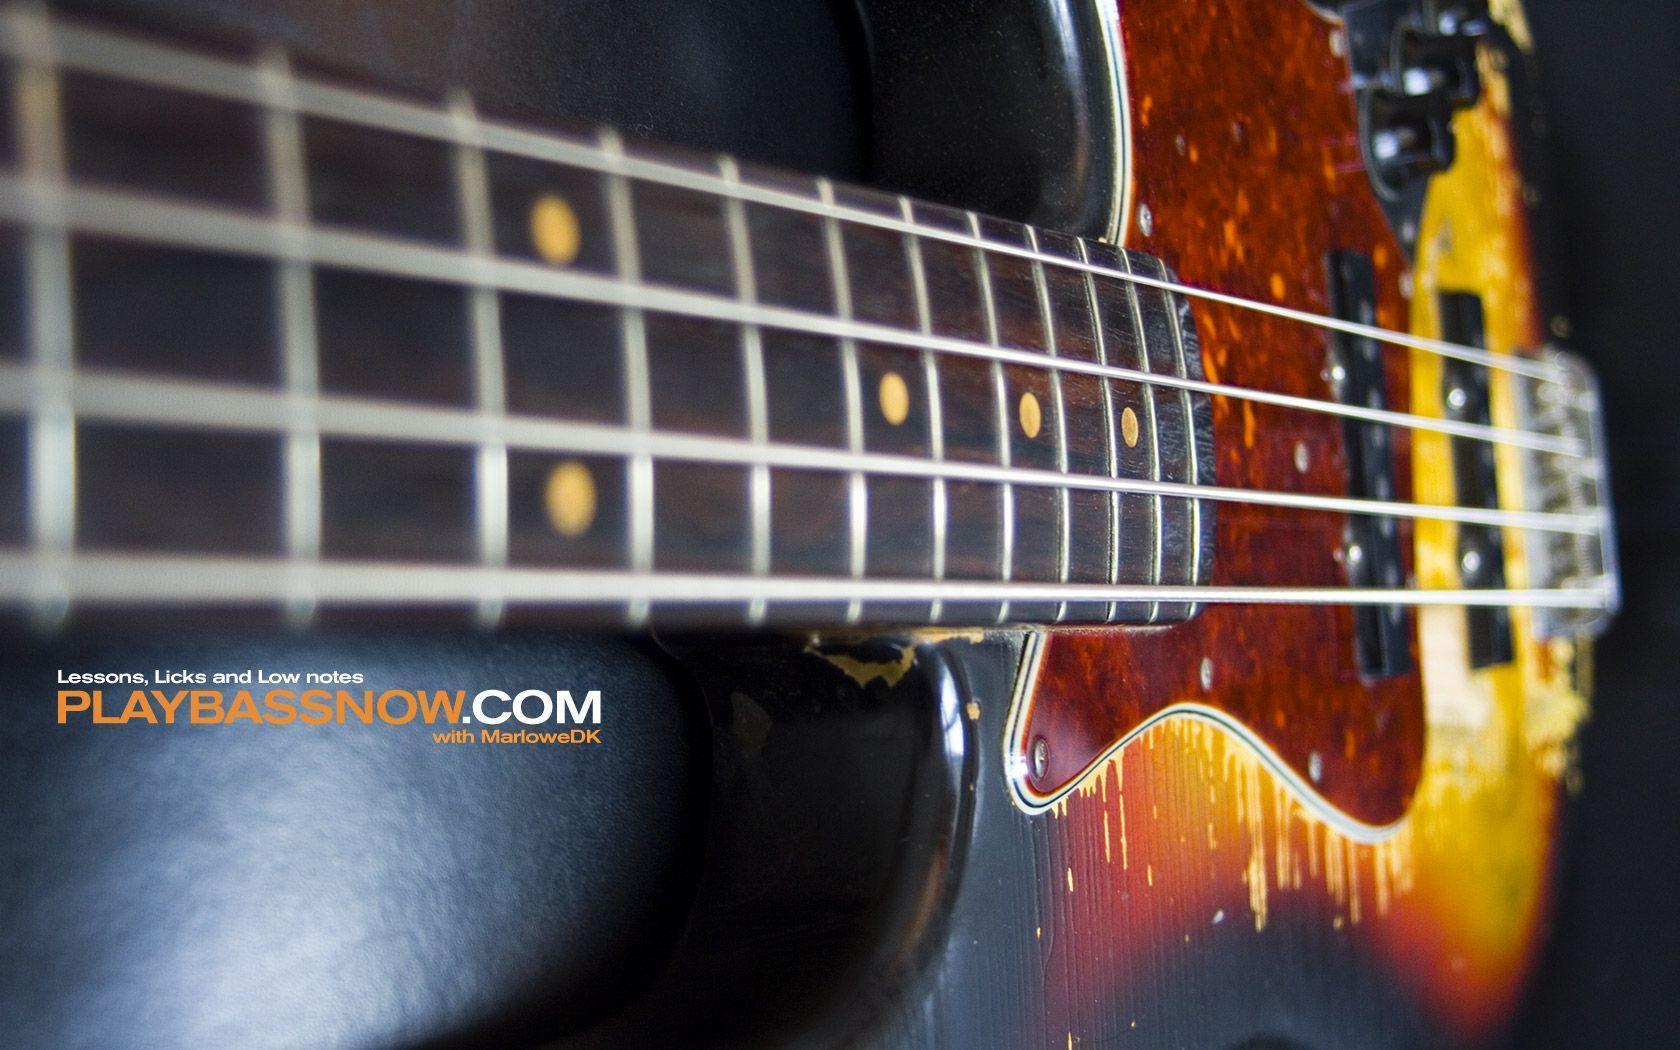 Fender Jazz Bass Wallpaper